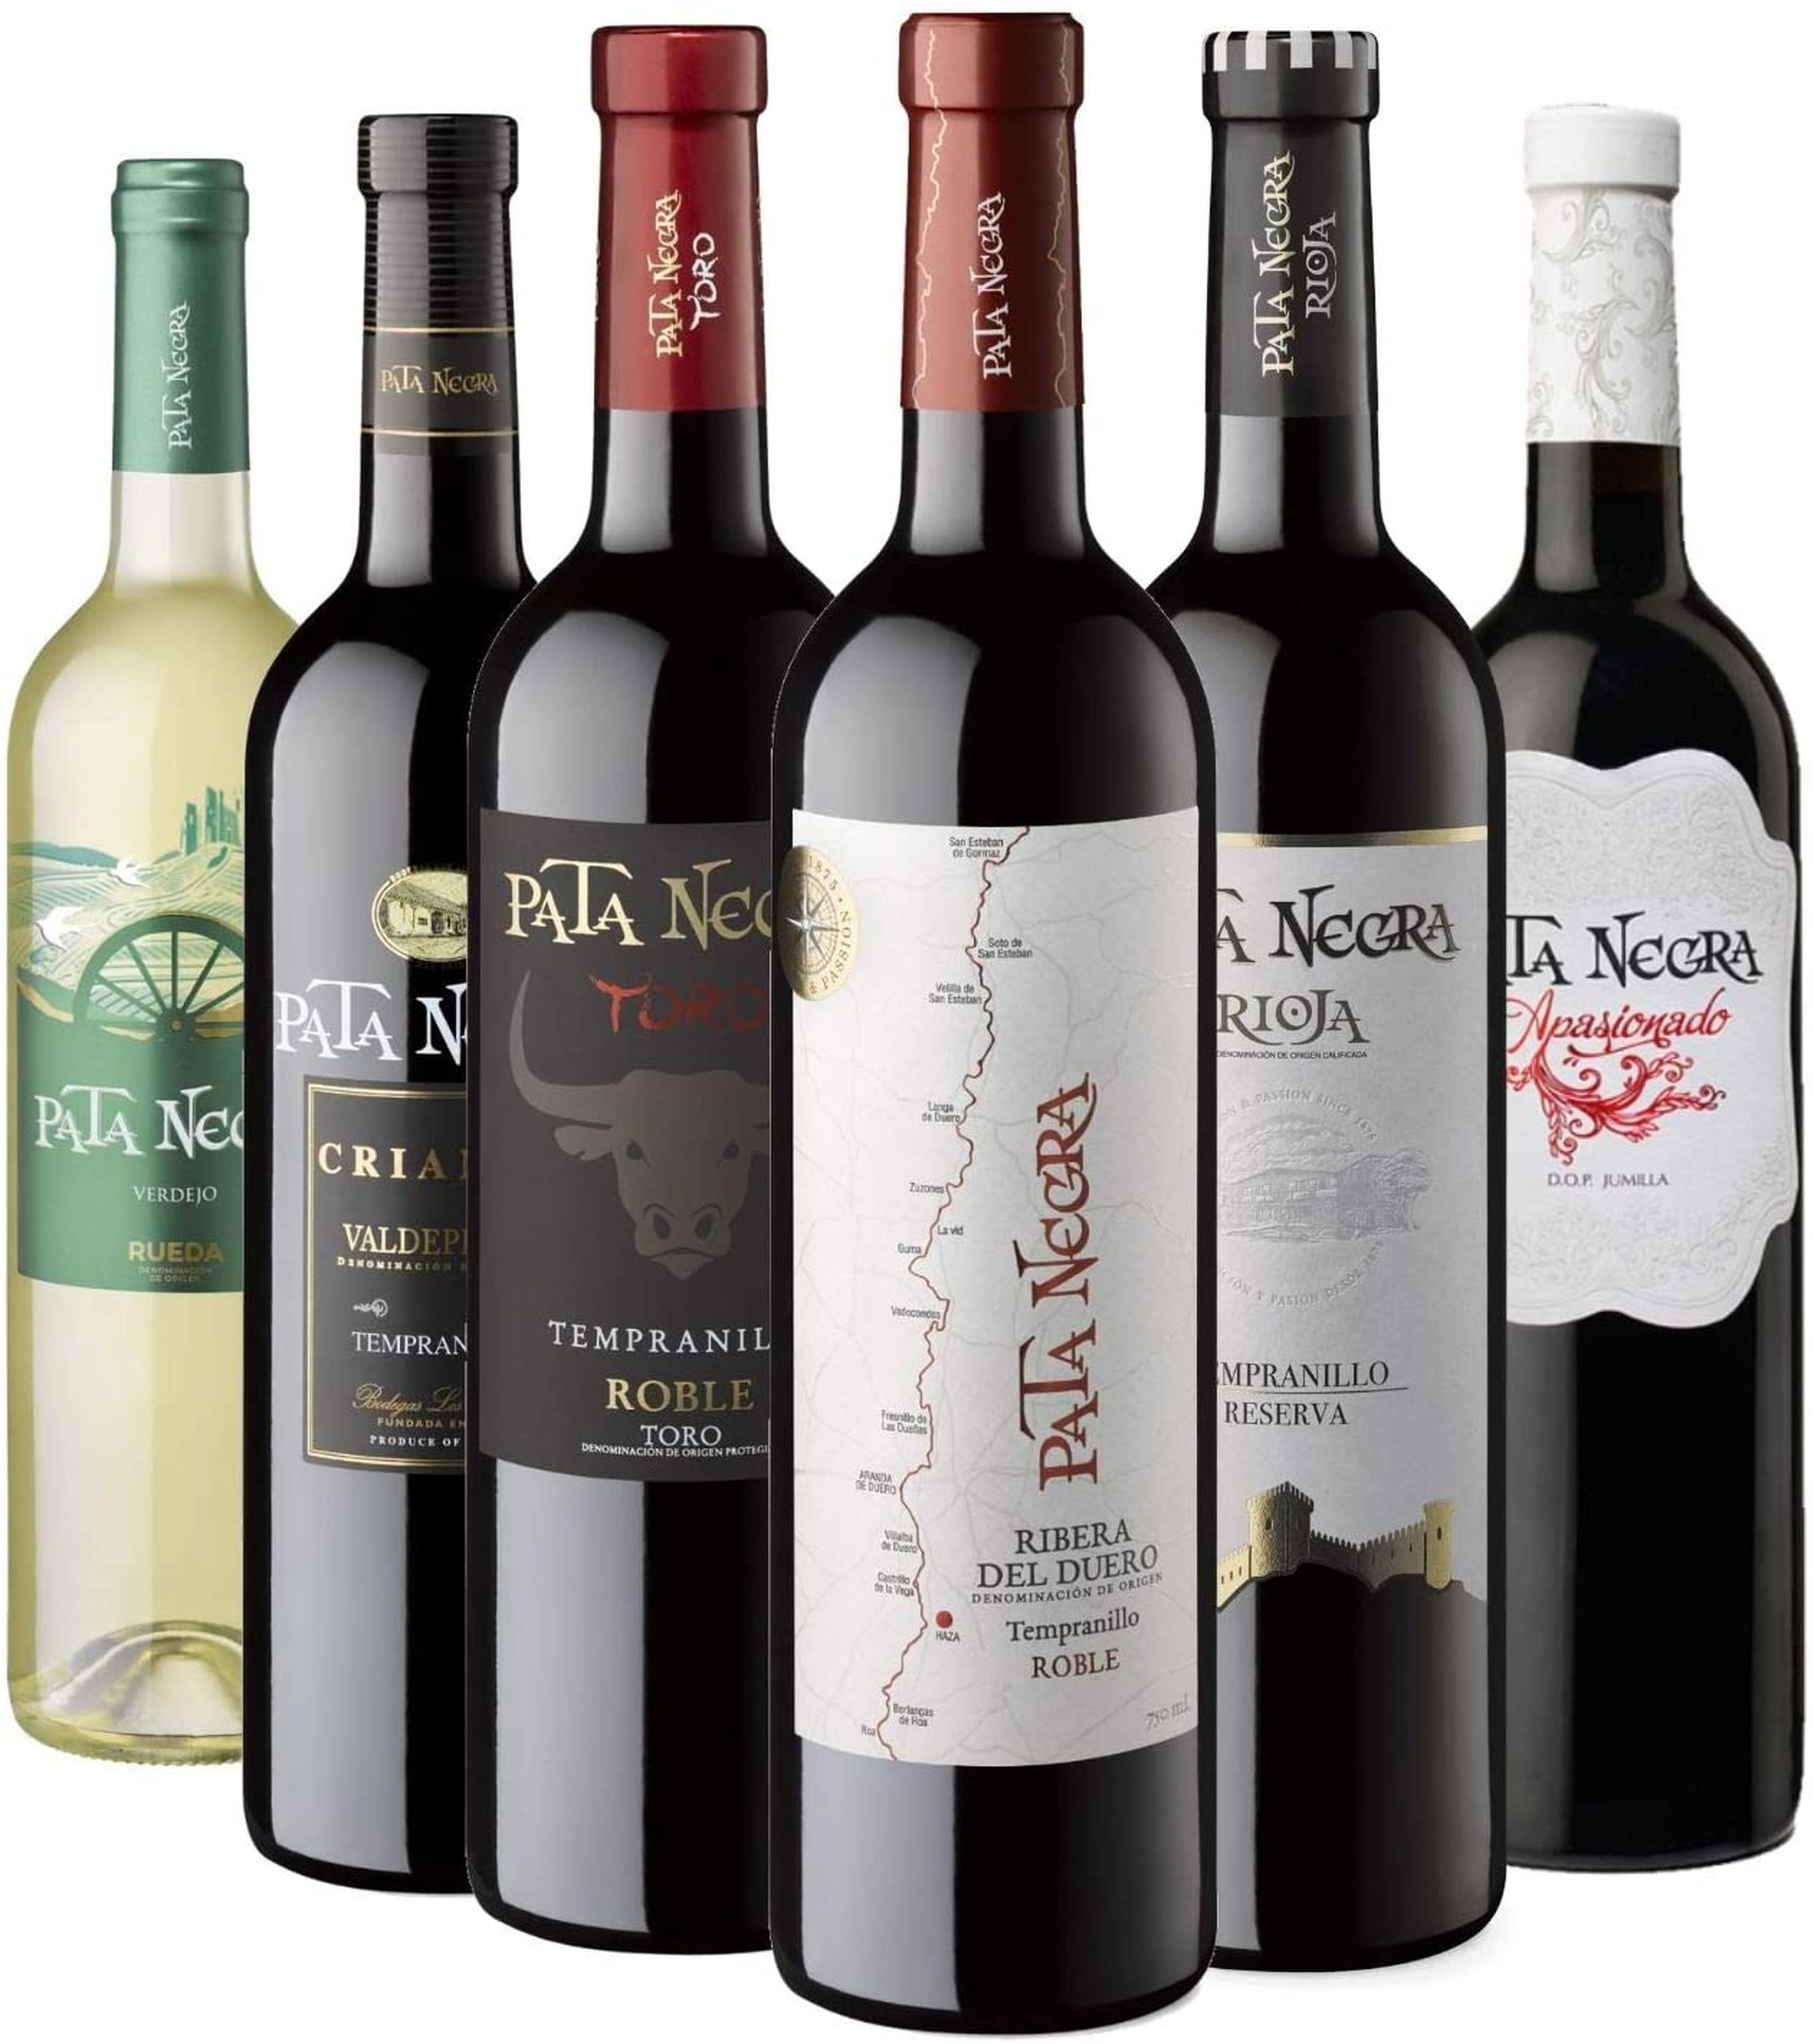 Selección de vinos Pata Negra